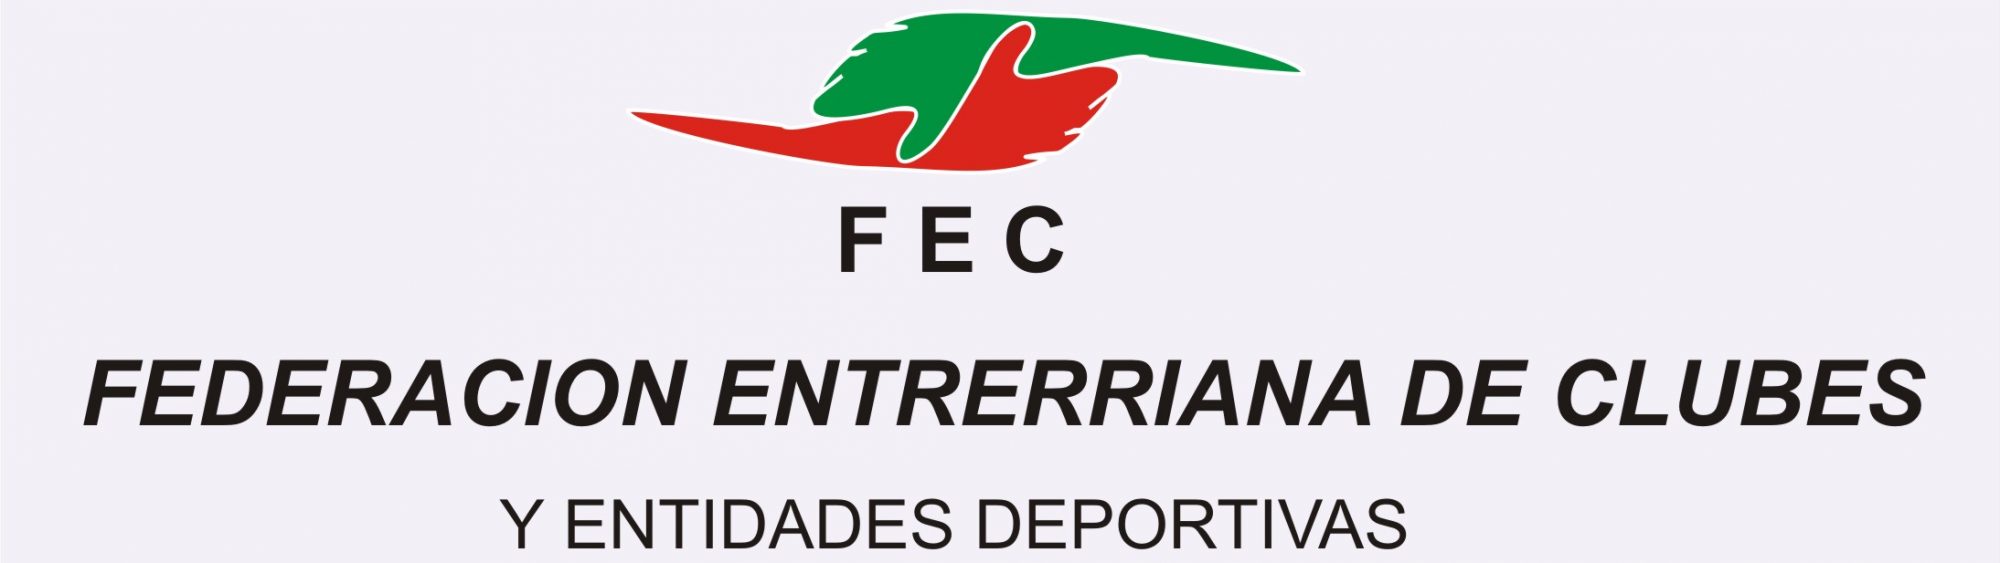 Federación Entrerriana de Clubes y Entidades Deportivas